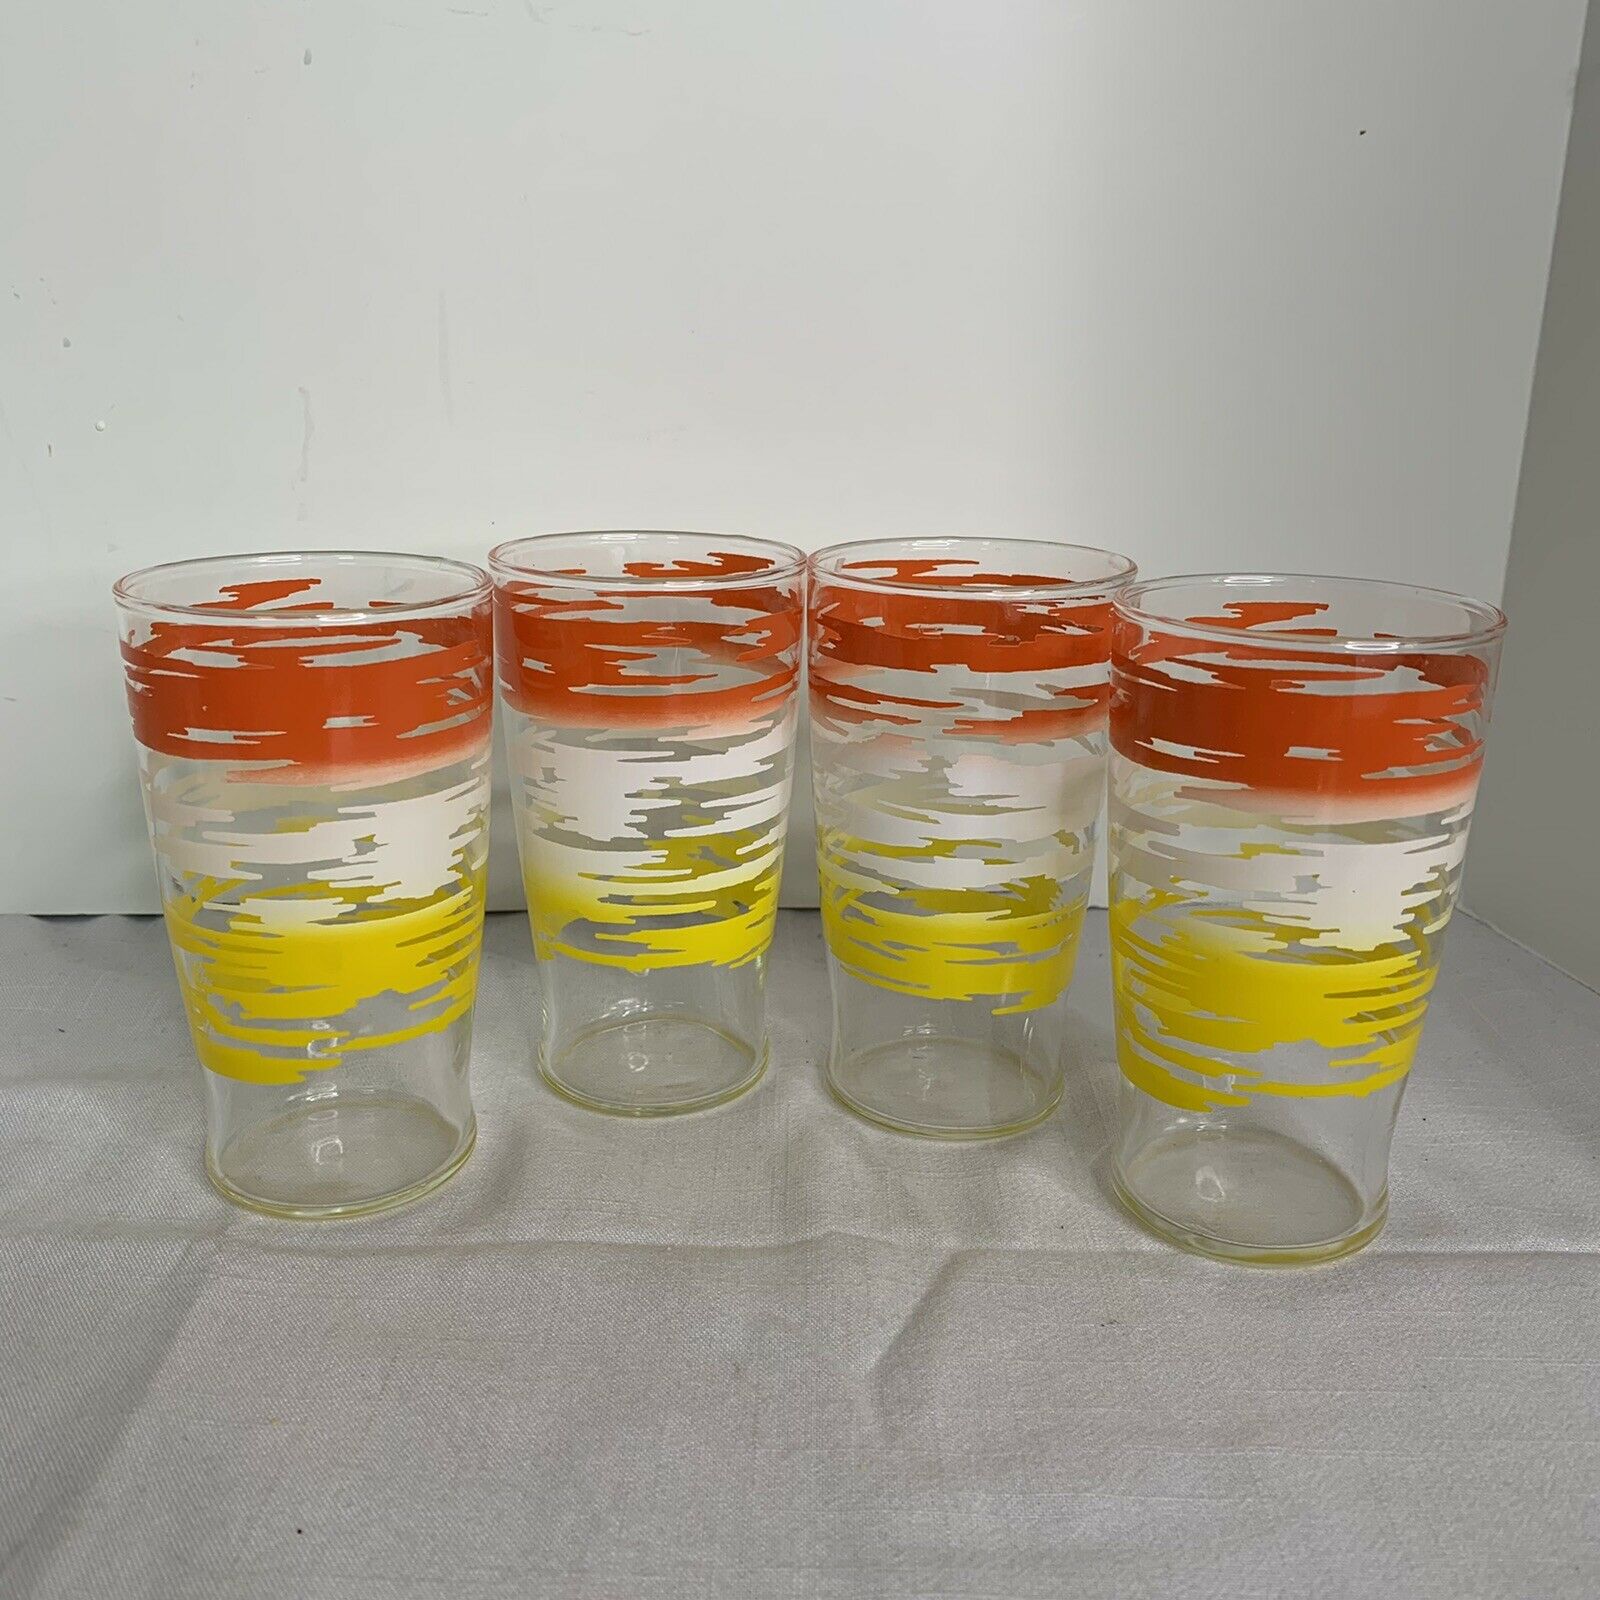 4 Vintage Small Glass Tumblers Set Yellow White Orange 4.75" Tall